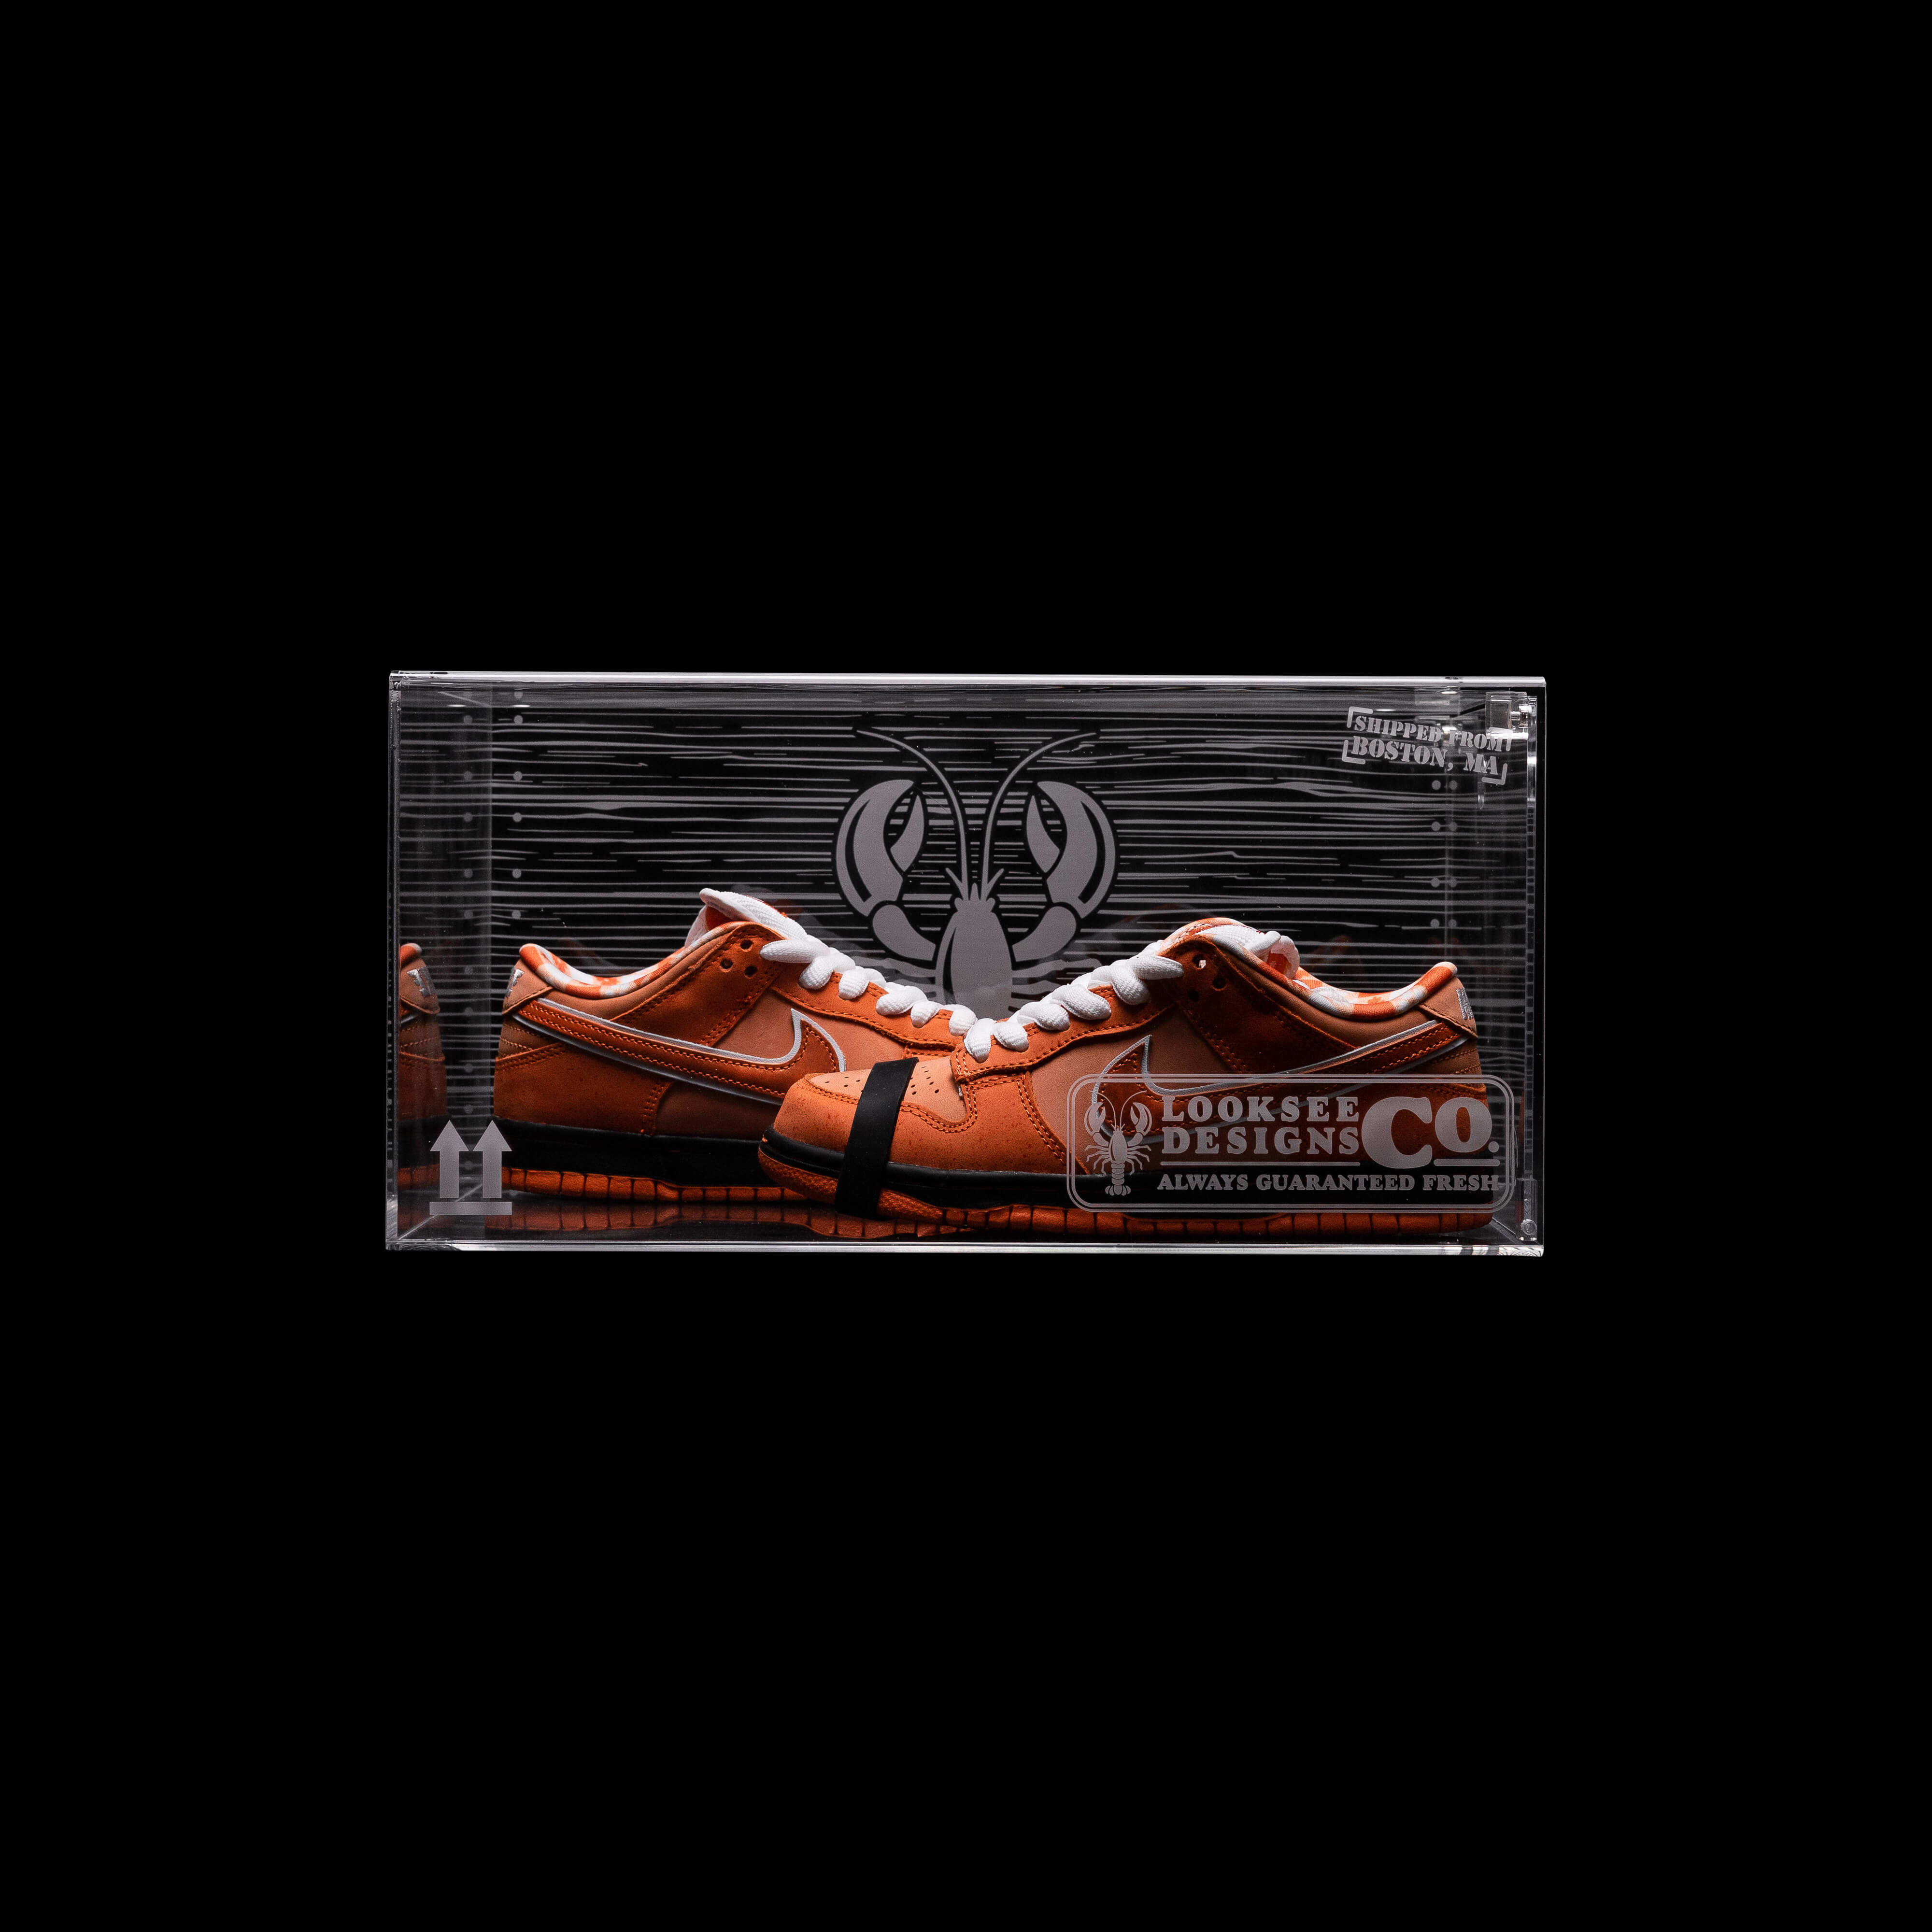 Looksee Designs - Acrylic Sneaker Display - Shoe Wall - Clear Shoe Boxes - Sneaker Throne - Sneaker Display - Sneaker Setup 